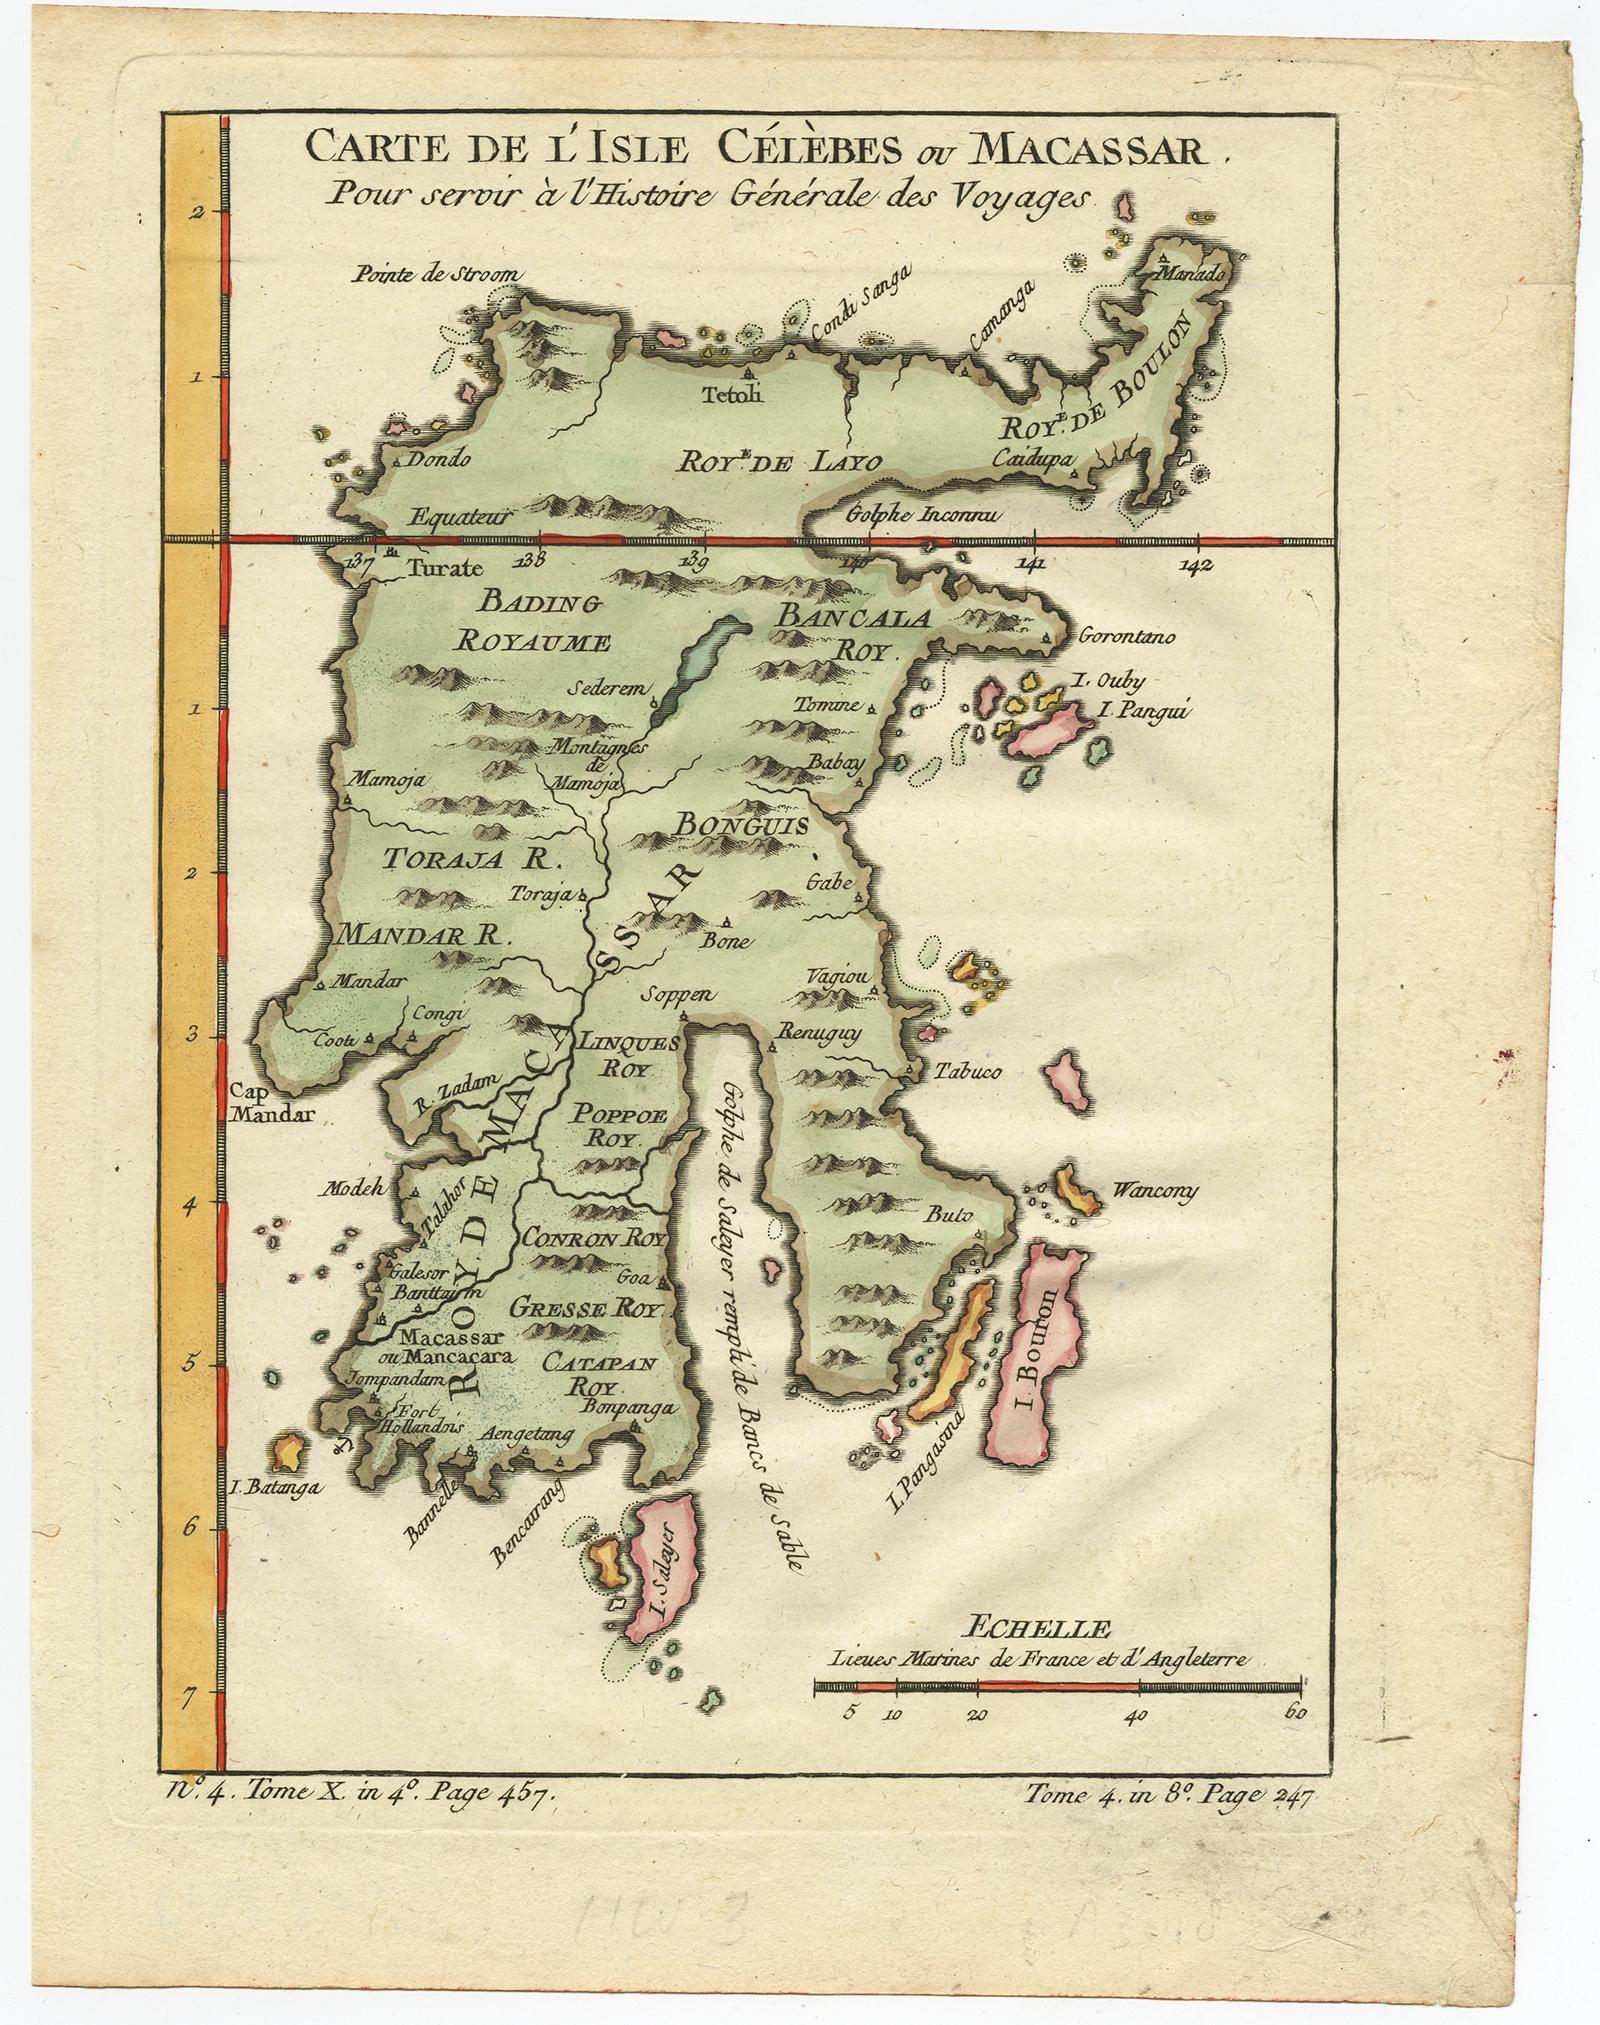 Antike Karte mit dem Titel 'Carte De L'Isle Celebes ou Macassar'. Detaillierte Kupferstichkarte von Celebes (Sulawesi, Indonesien) mit Makassar, der wichtigsten Handelsstadt Ostindonesiens im sechzehnten Jahrhundert. Makassar handelte mit Gewürzen,